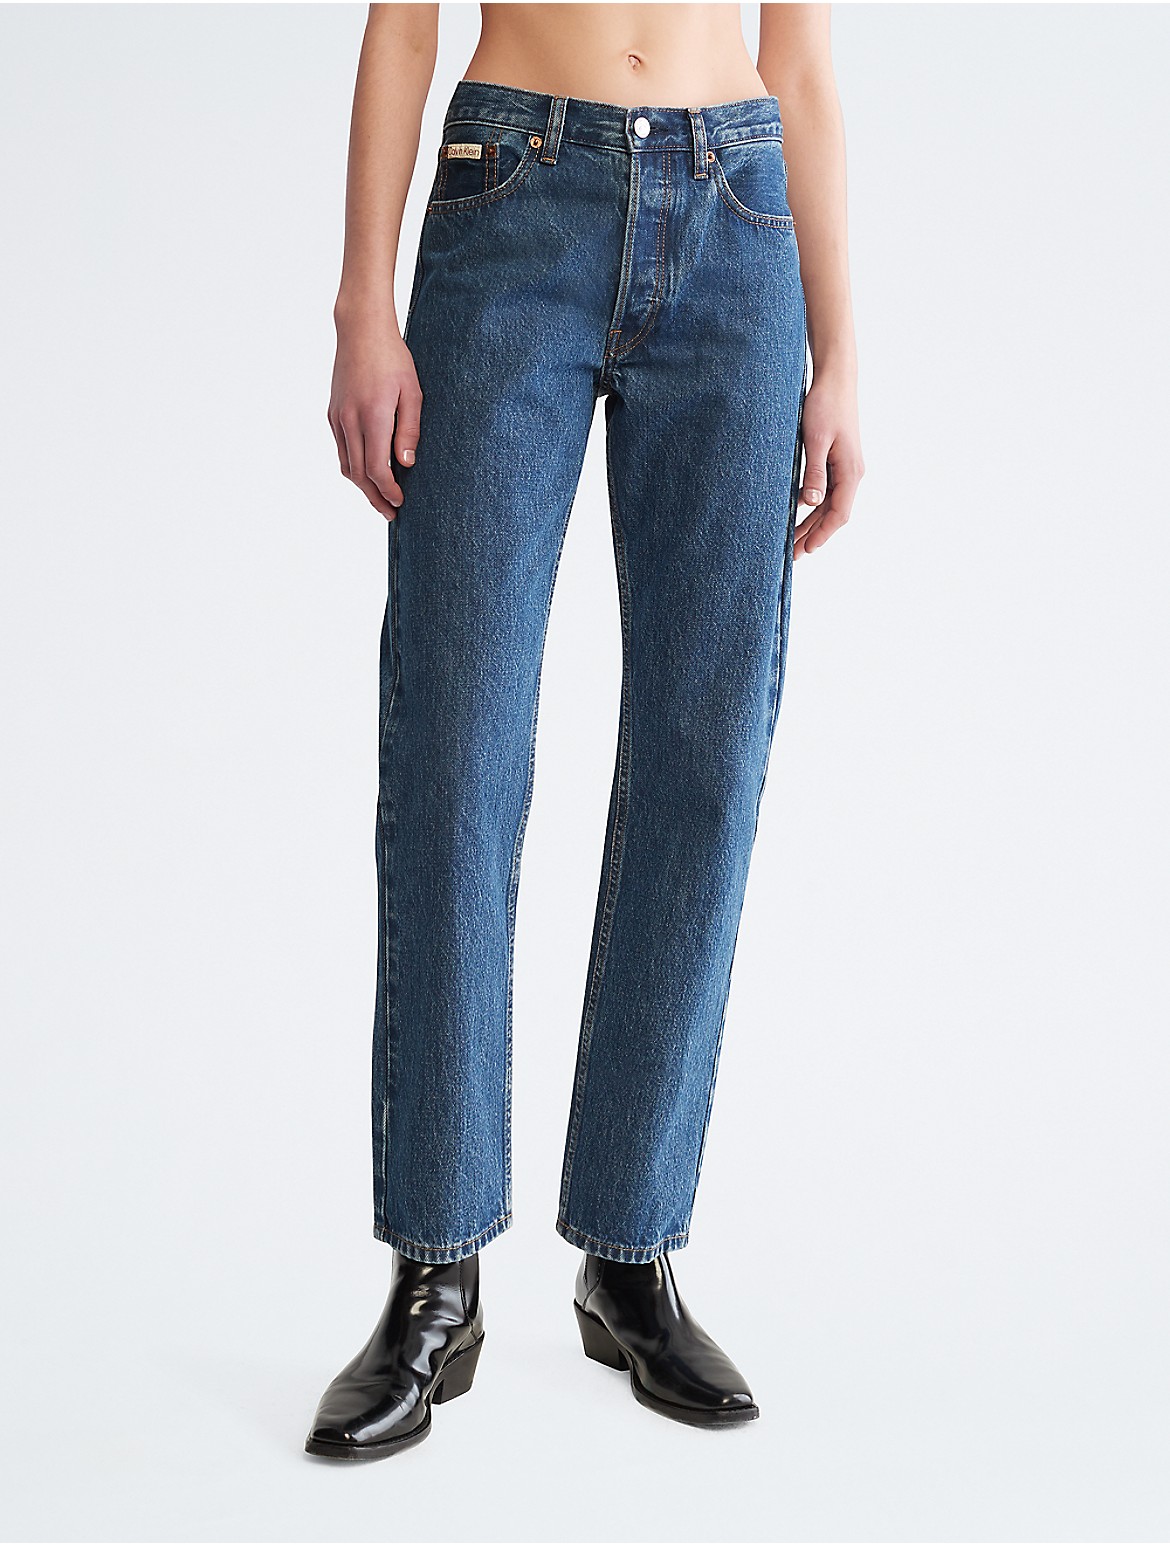 Calvin Klein Women's Original Straight Comfort Stretch Jeans - Blue - 25